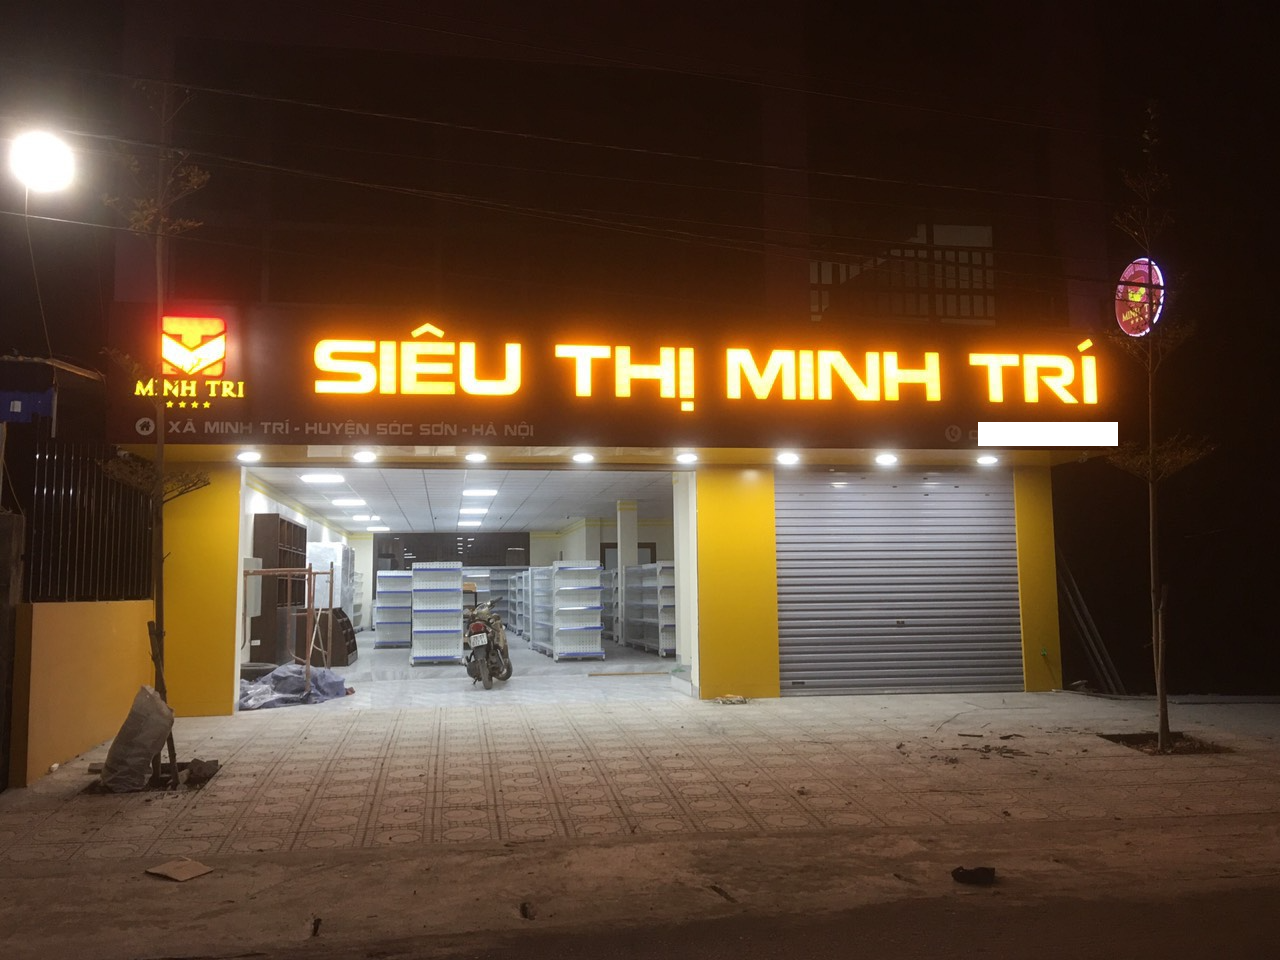 Biển hiệu siêu thị Minh Trí.